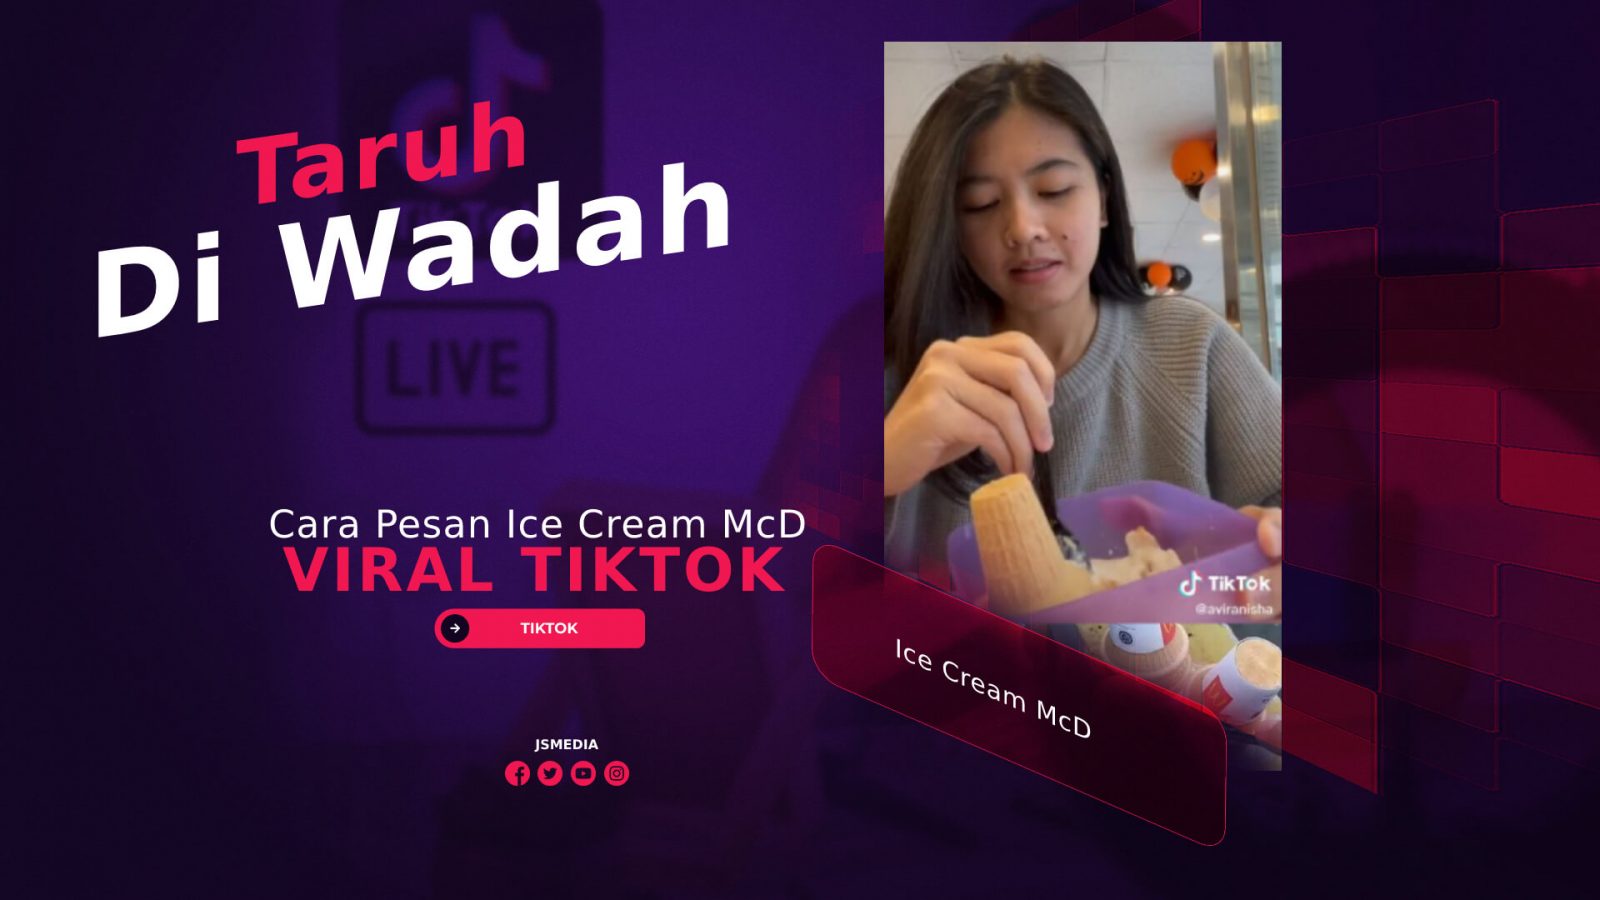 Cara Pesan Ice Cream McD Viral TikTok Taruh Wadah